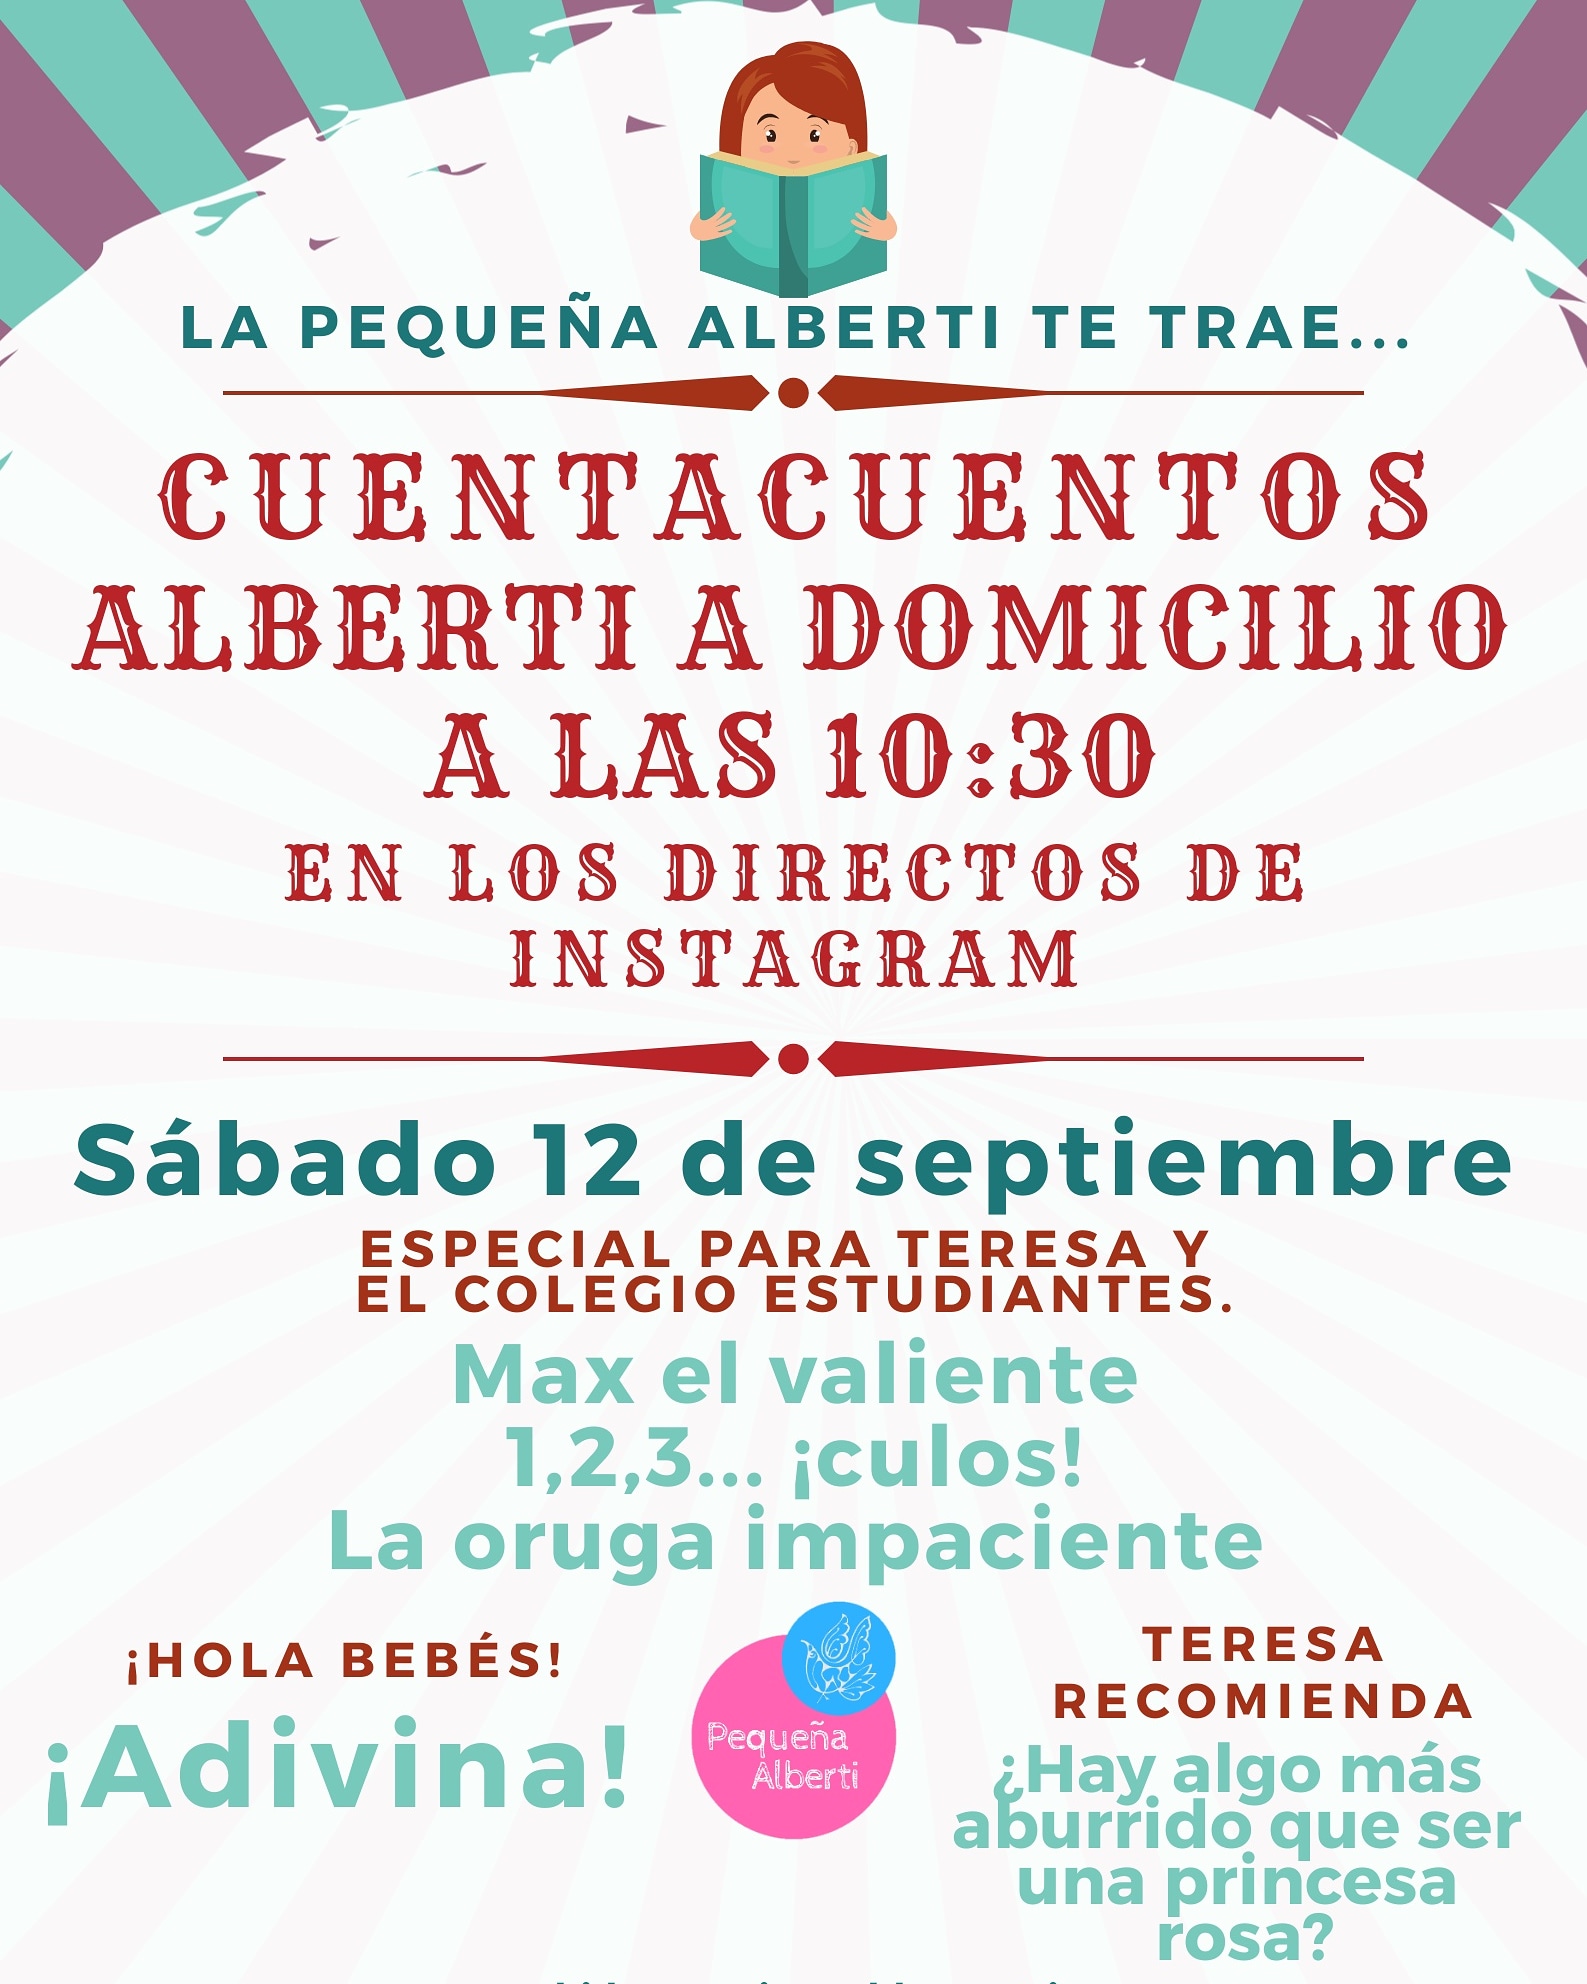 Cuentacuentos #AlbertiADomicilio 58 - Especial para Teresa y el Colegio Estudiantes de Madrid